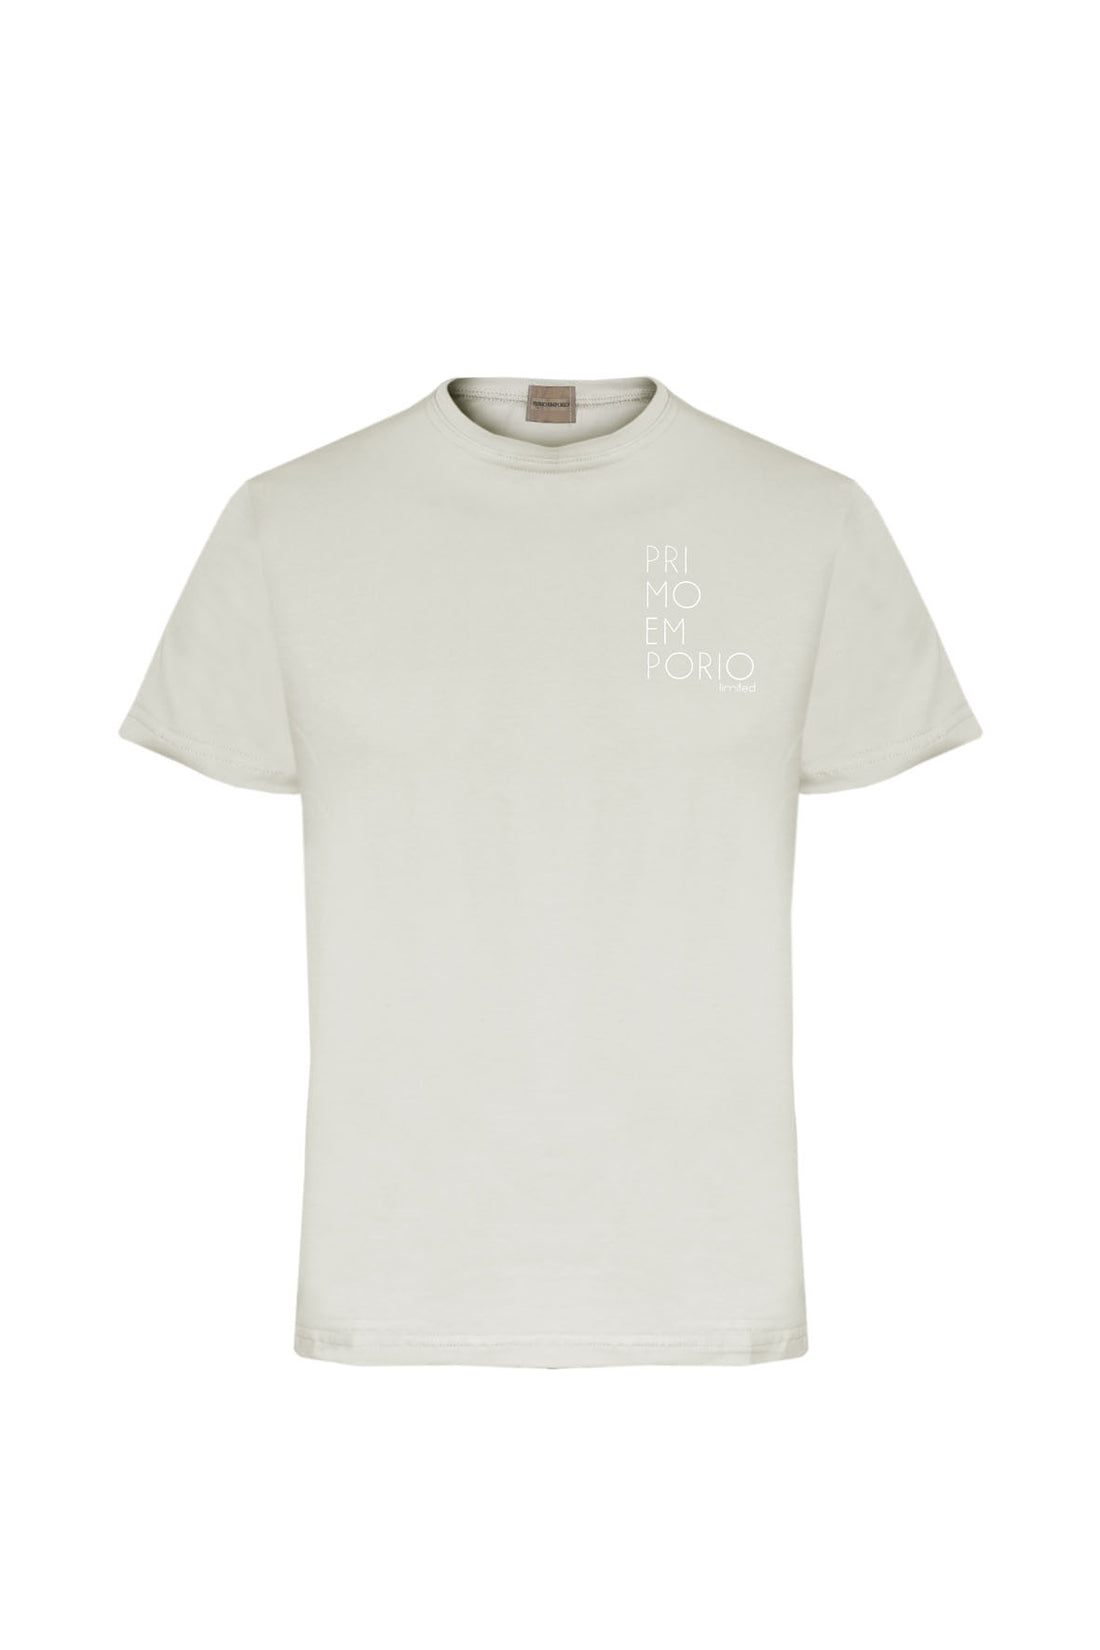 T-Shirt Elastica con Stampa Petto Primo Emporio - Ecru